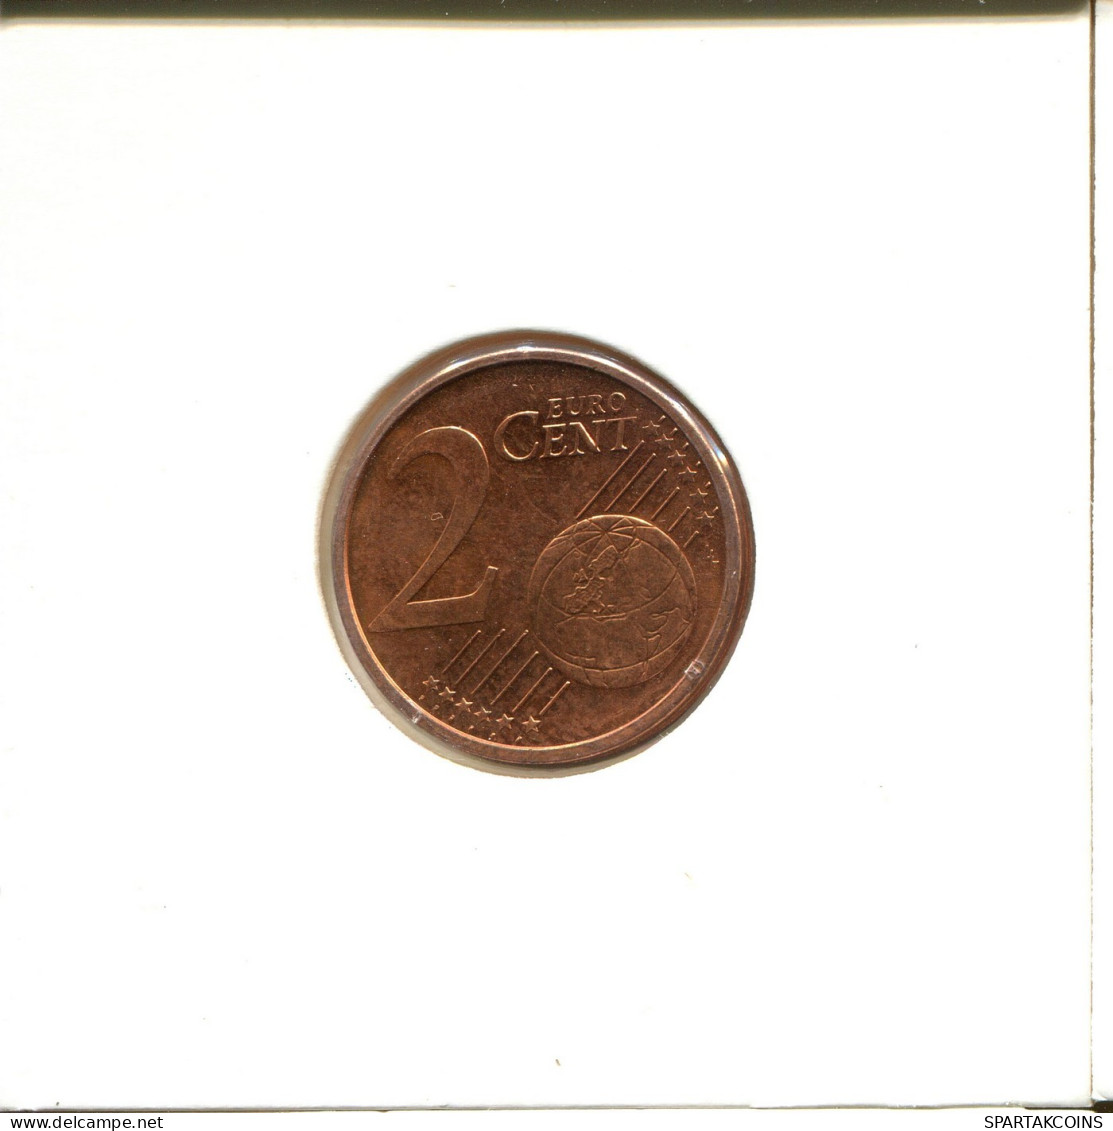 2 EURO CENTS 2010 ALEMANIA Moneda GERMANY #EU146.E.A - Germany